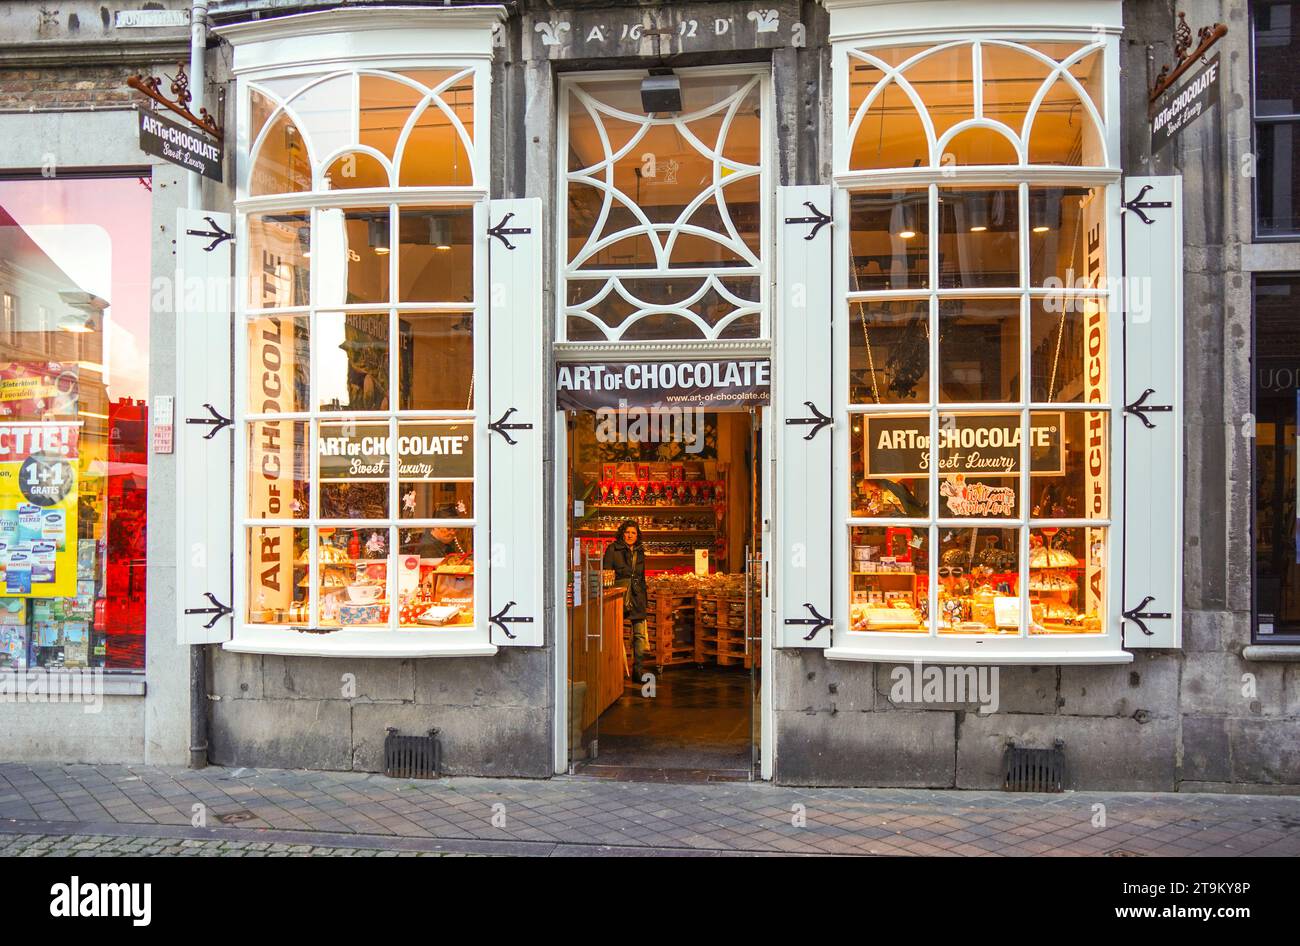 Art of Chocolate shop, magasin de détail, Maastricht, Limbourg, pays-Bas. Banque D'Images